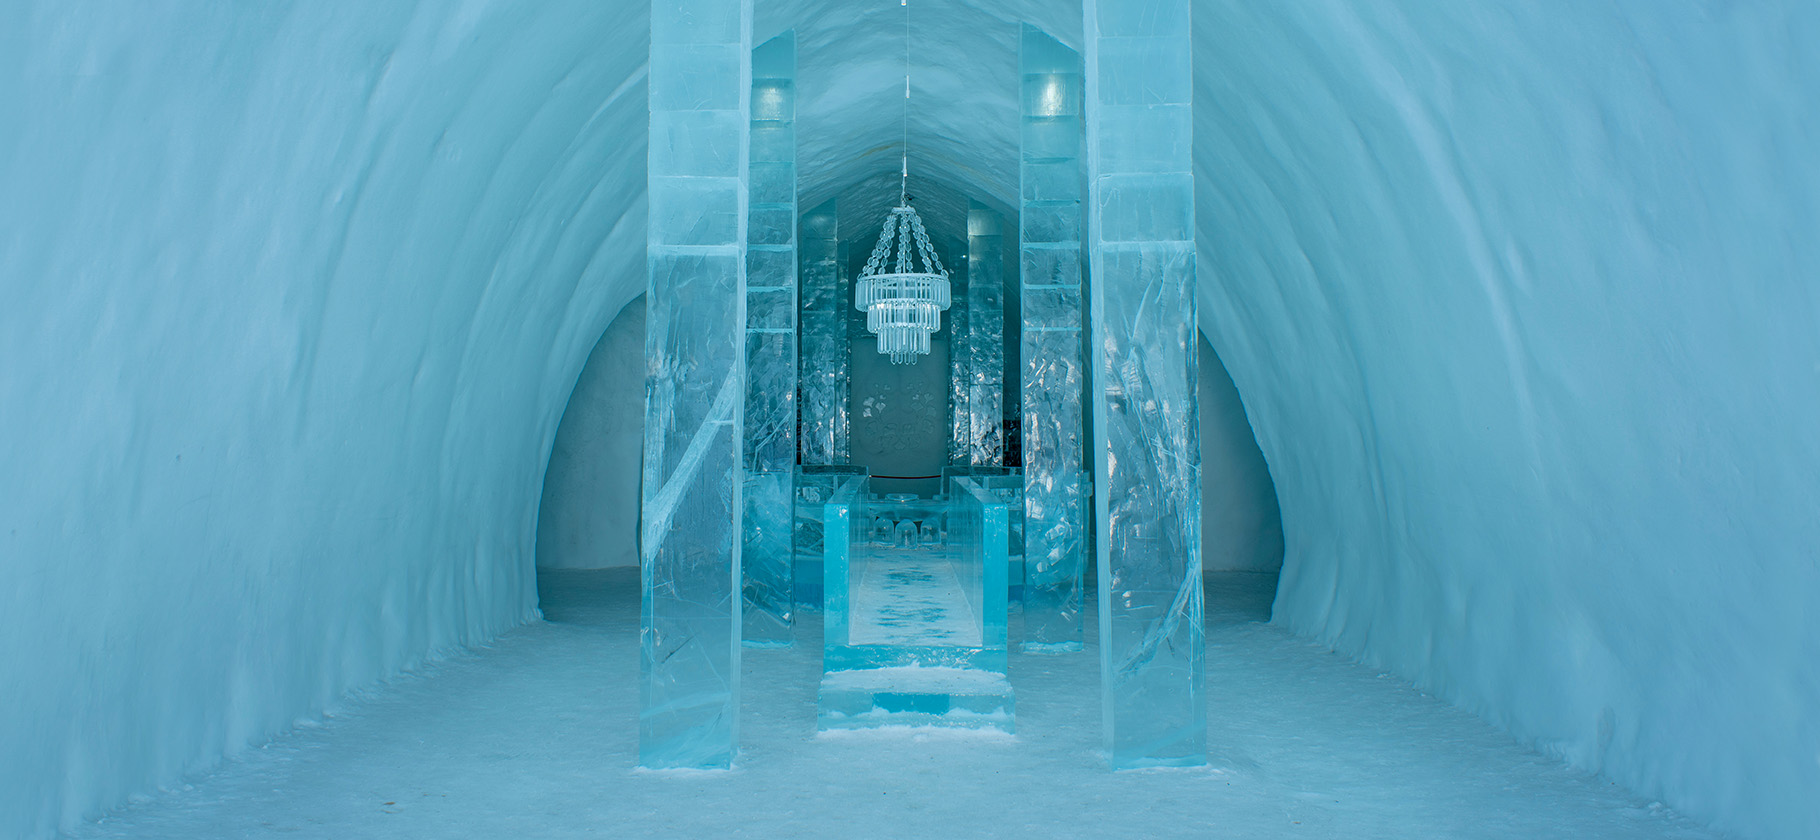 Нора хоббита и дом изо льда: 10 необычных отелей мира